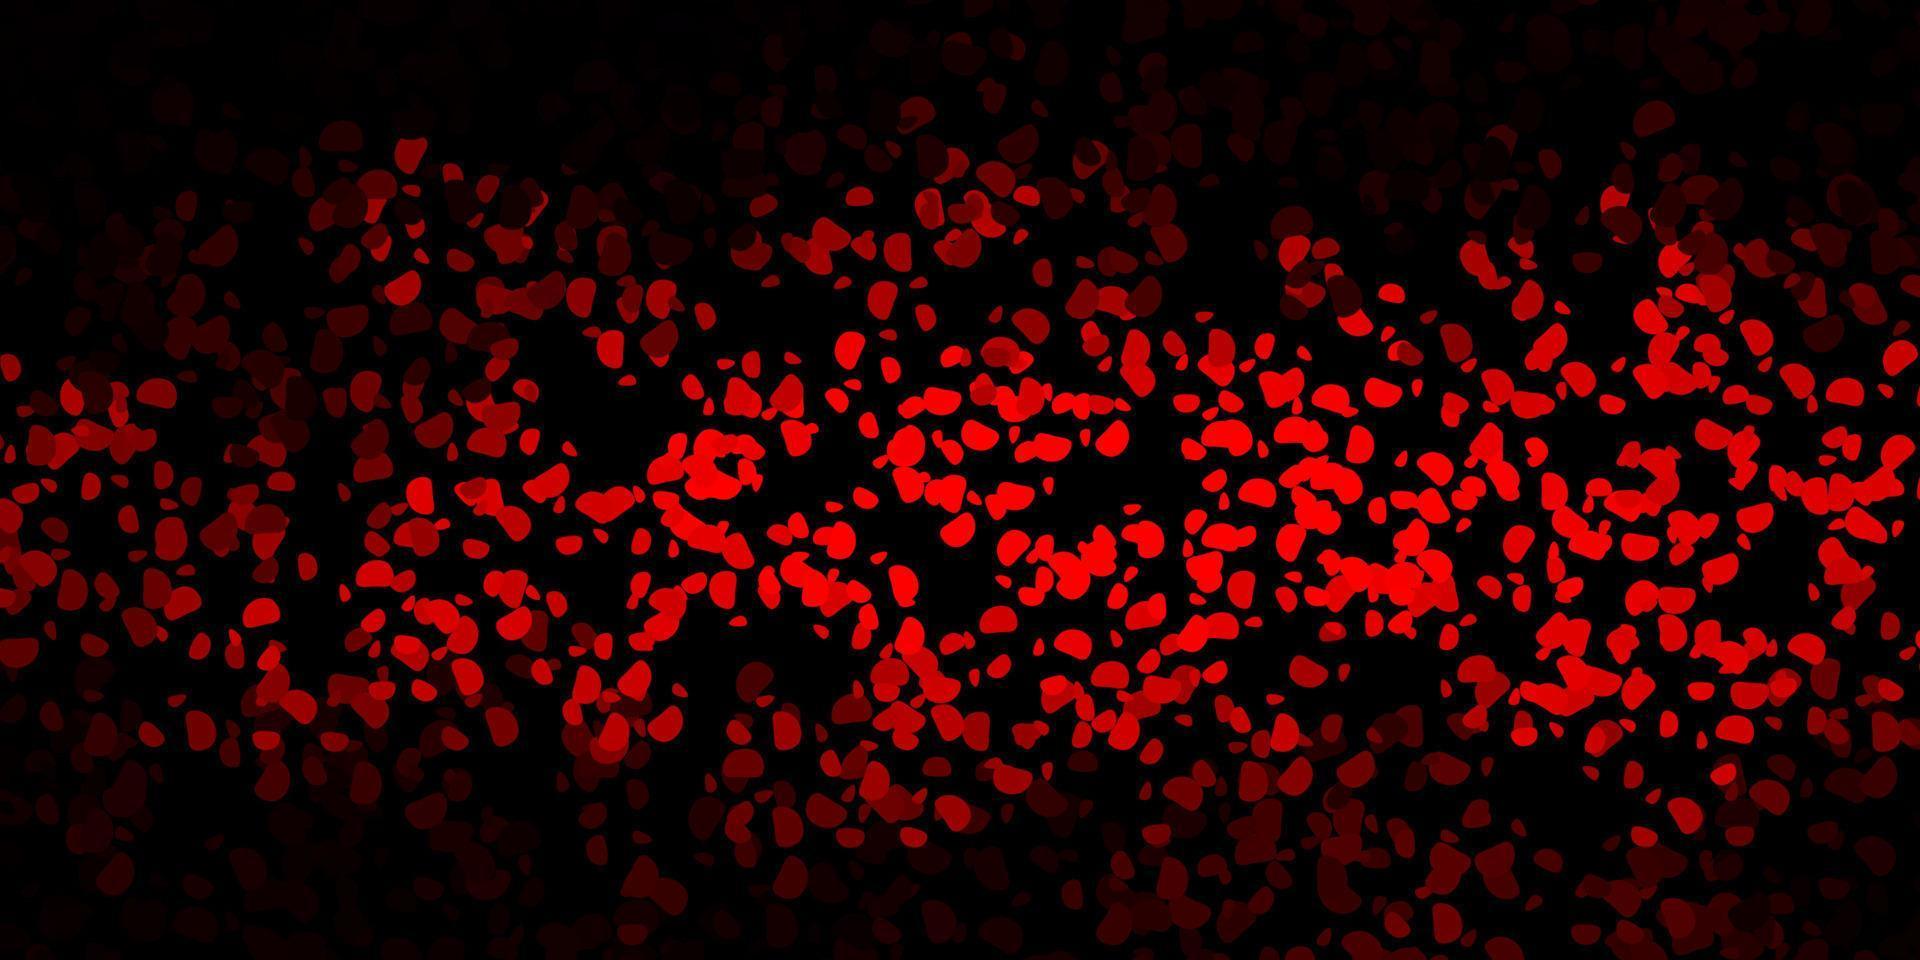 fundo vector vermelho escuro com formas aleatórias.